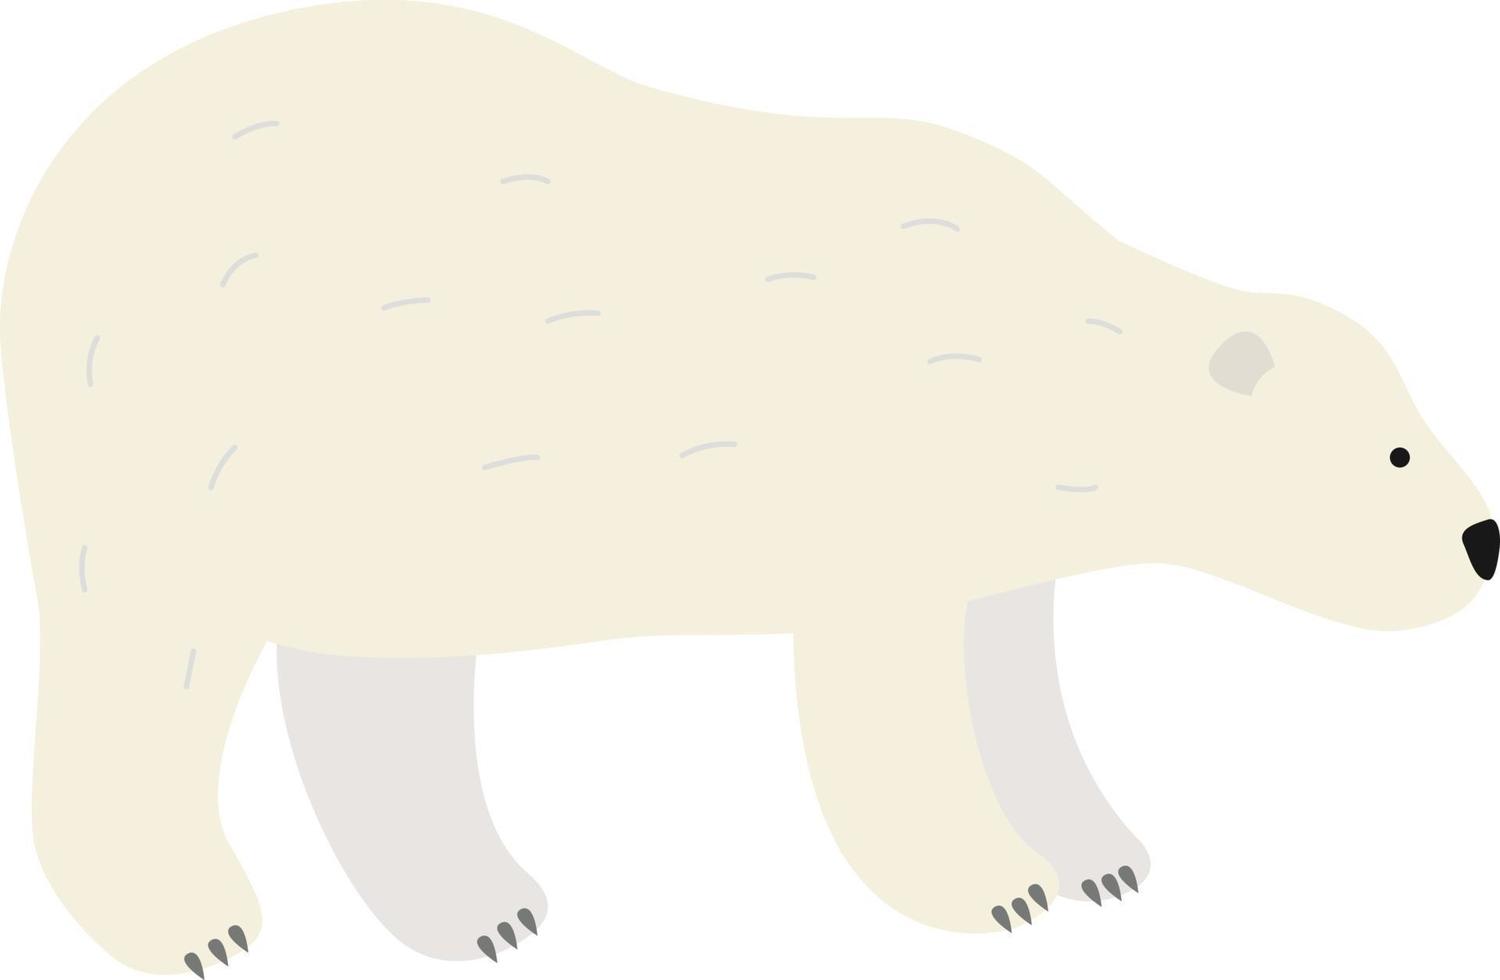 urso polar branco vetor